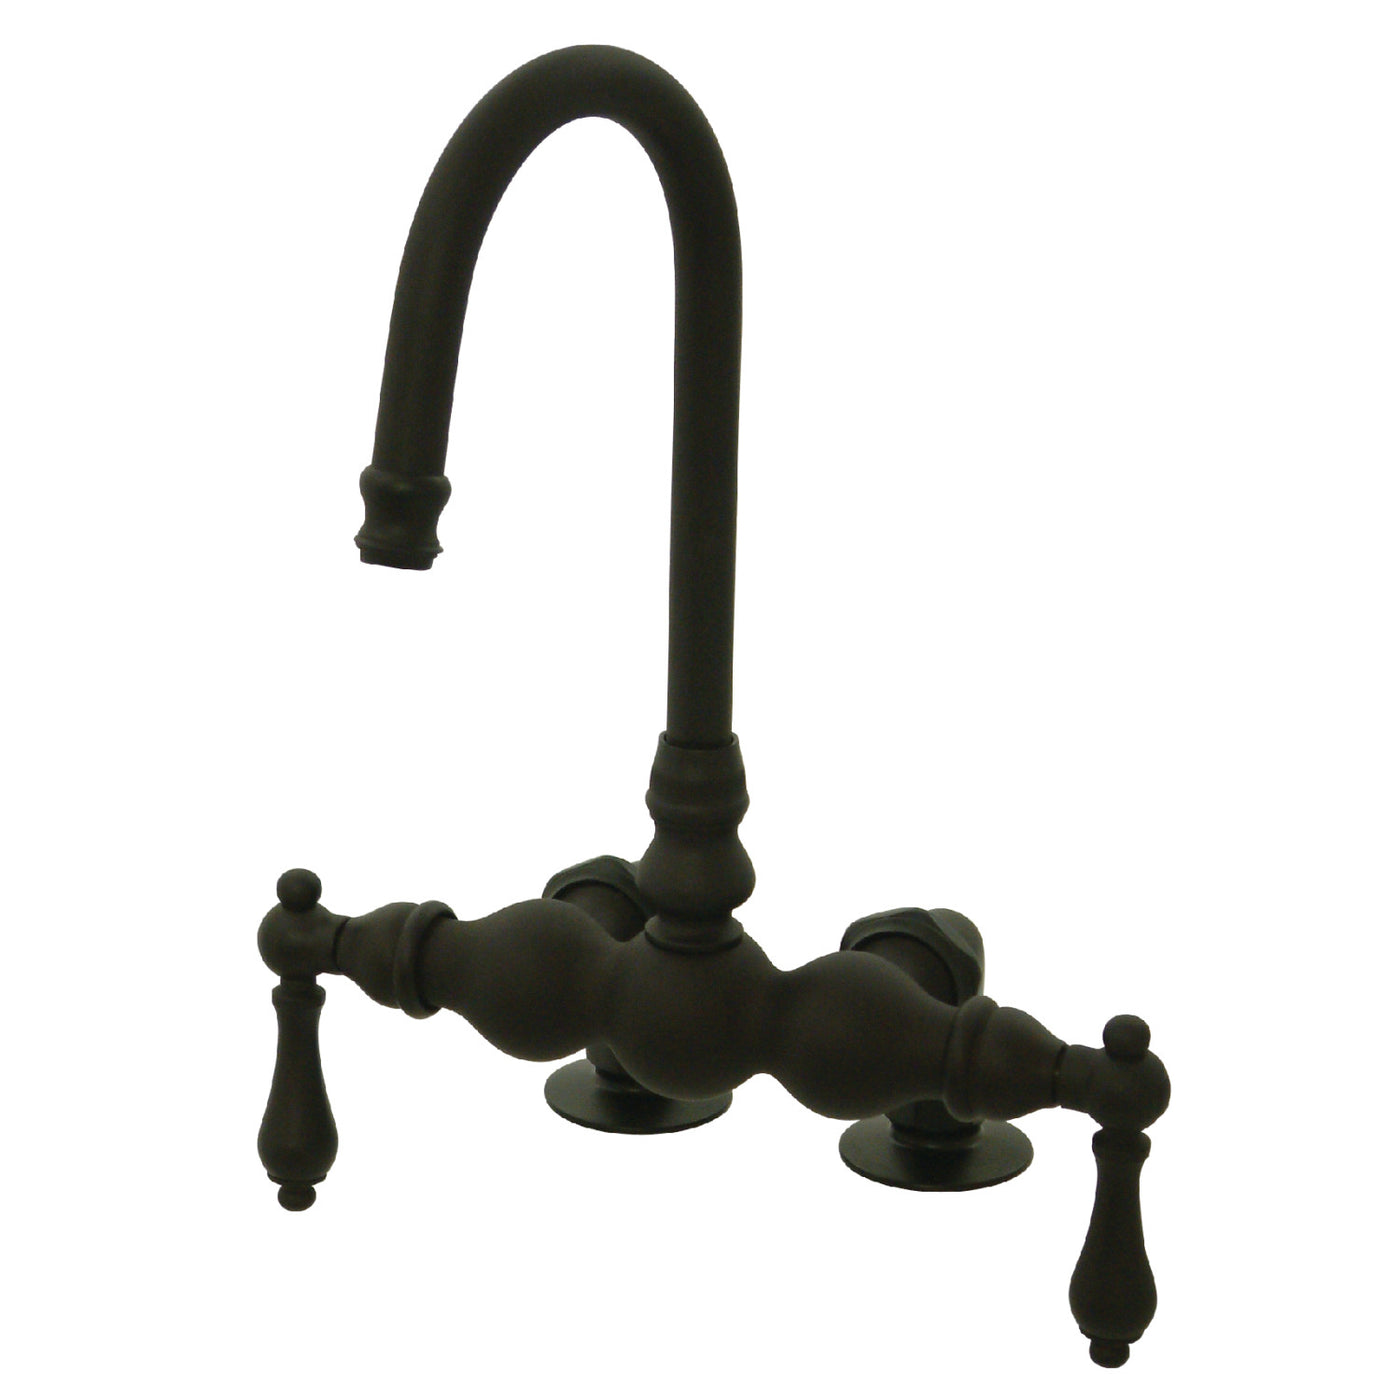 Elements of Design DT0915AL 3-3/8-Inch Deck Mount Tub Faucet, Oil Rubbed Bronze